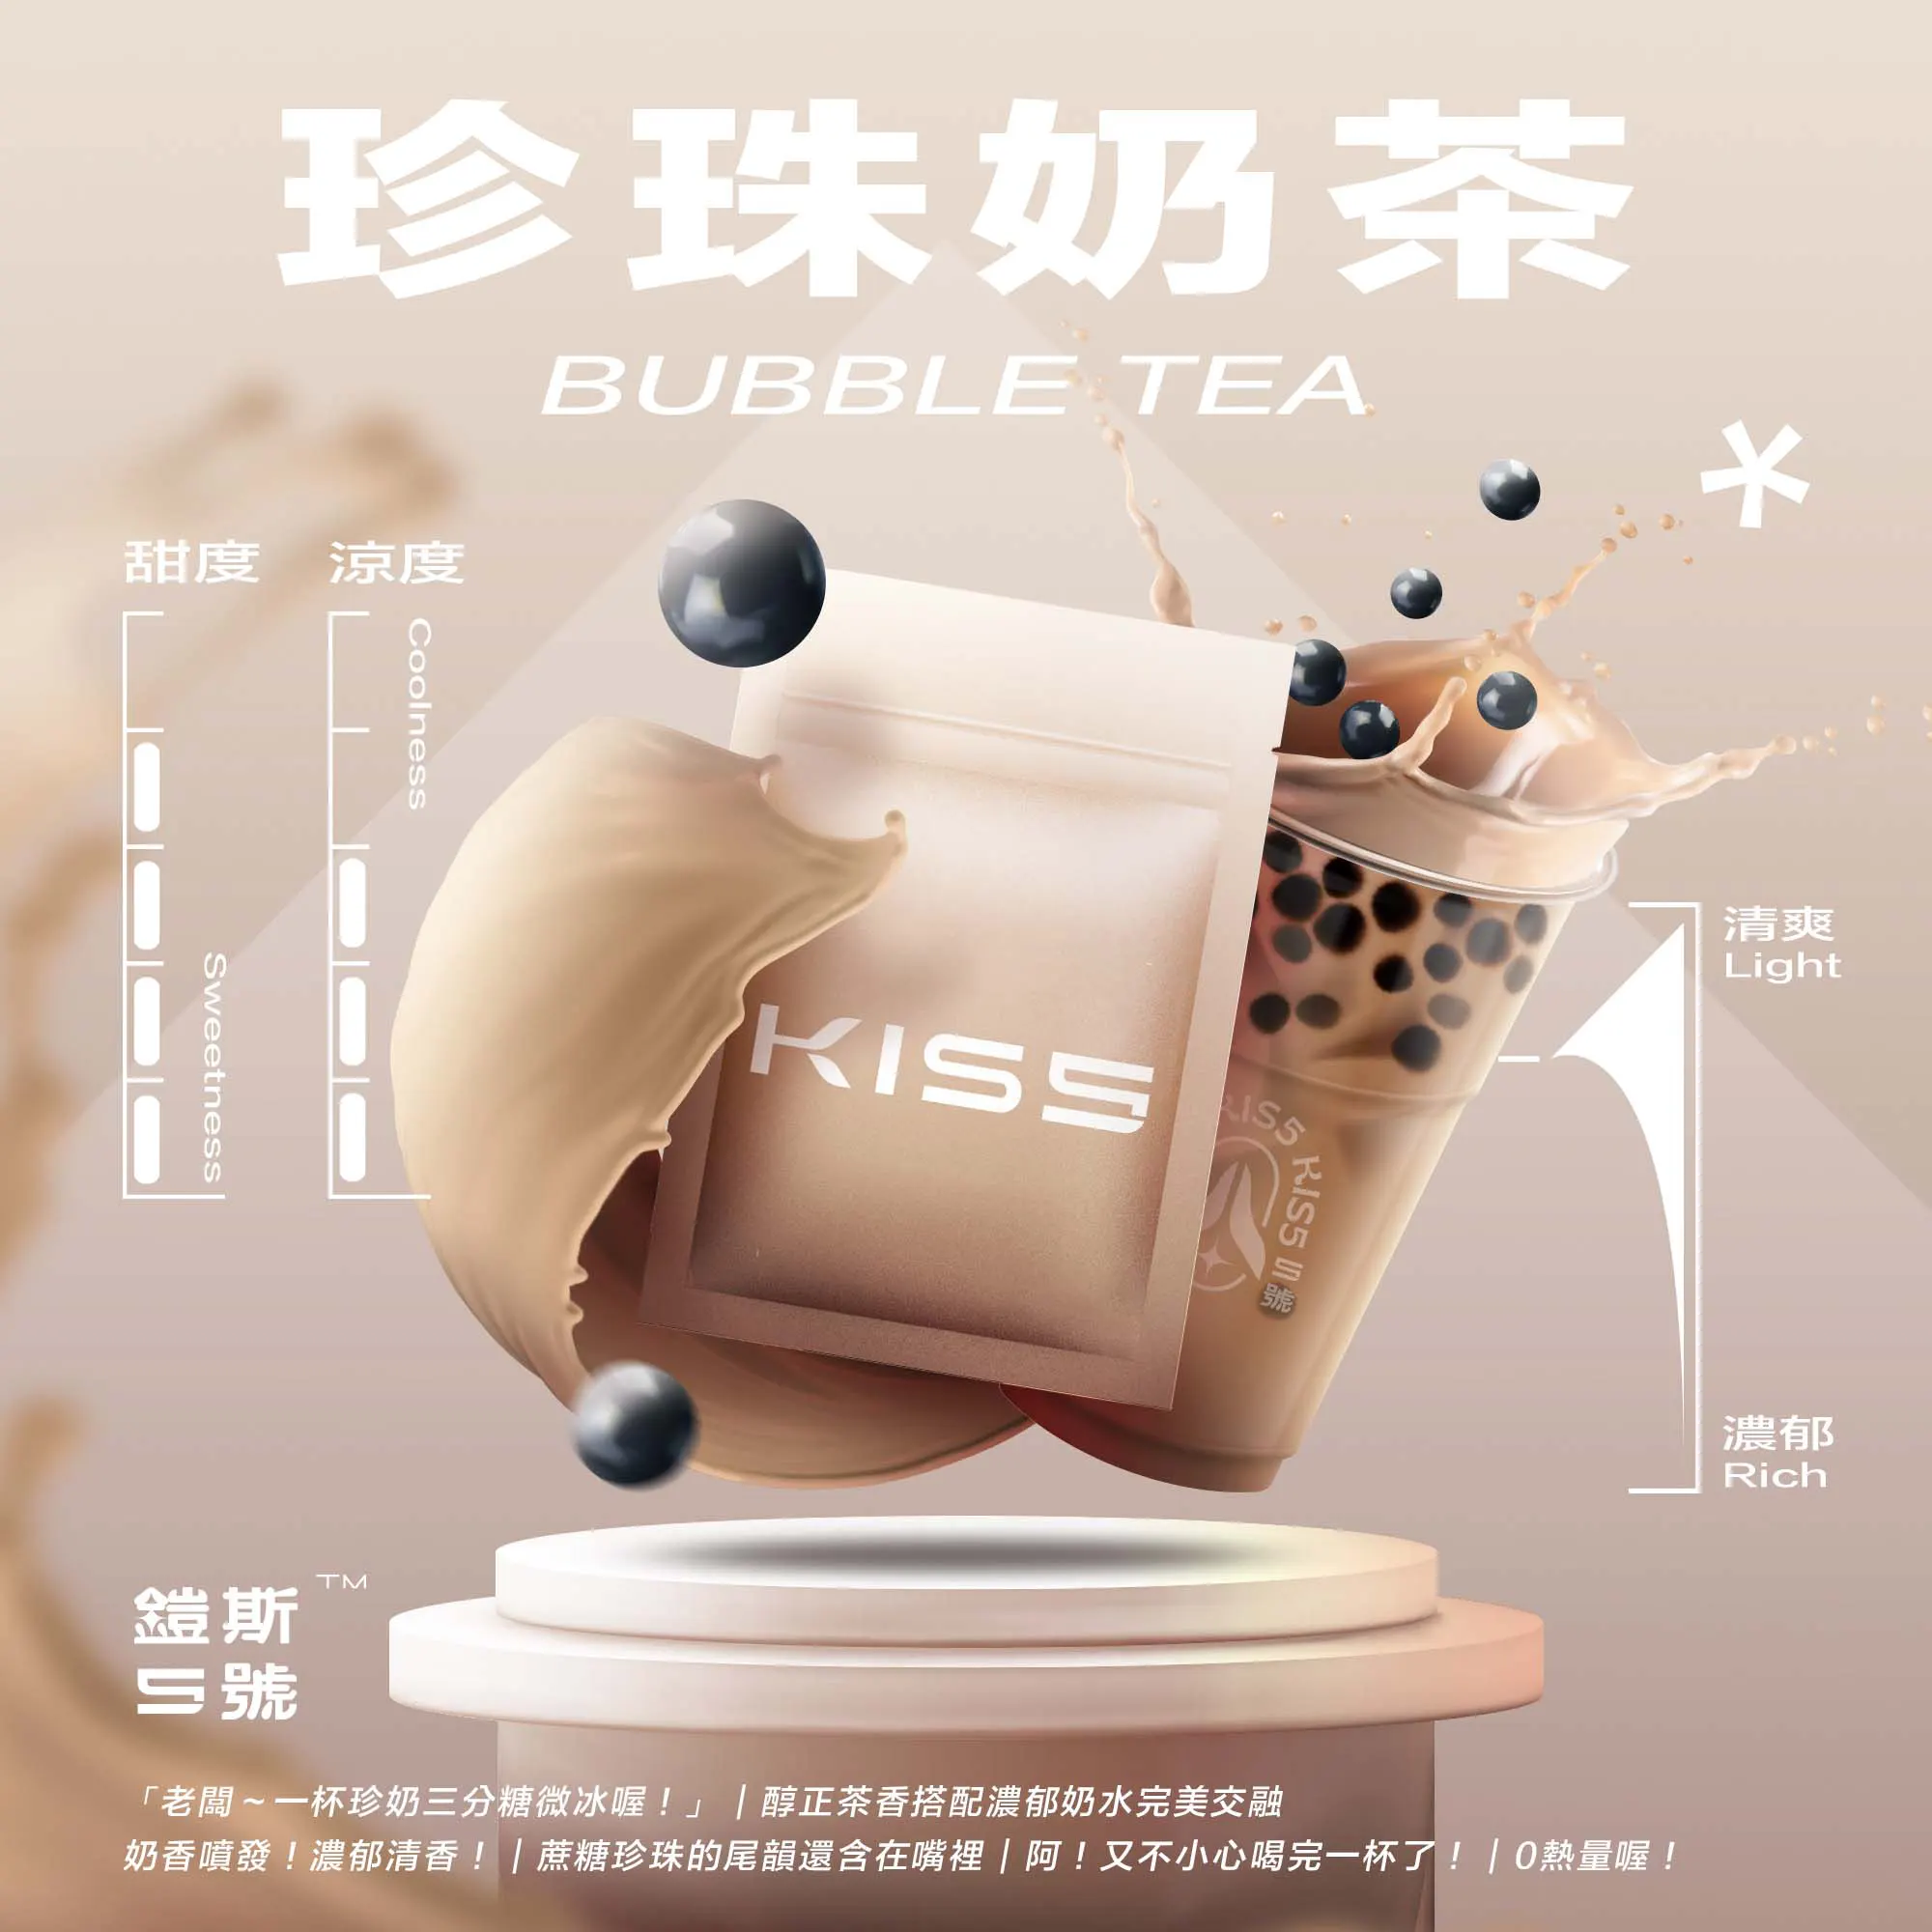 kis5-bubble-tea